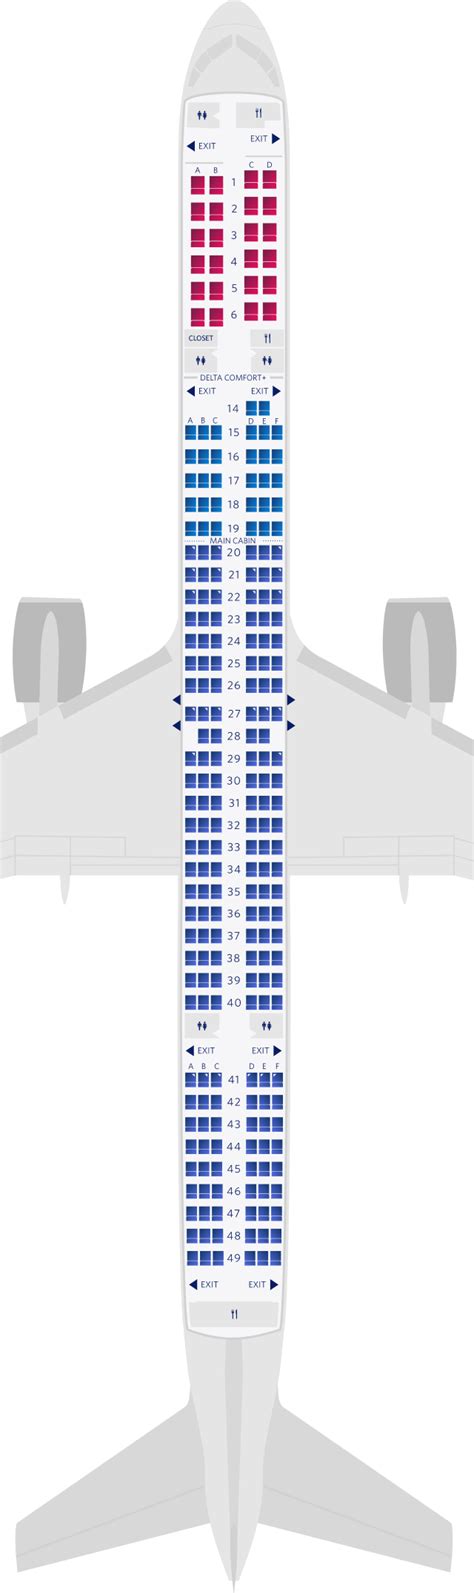 boeing 757 300 seating plan